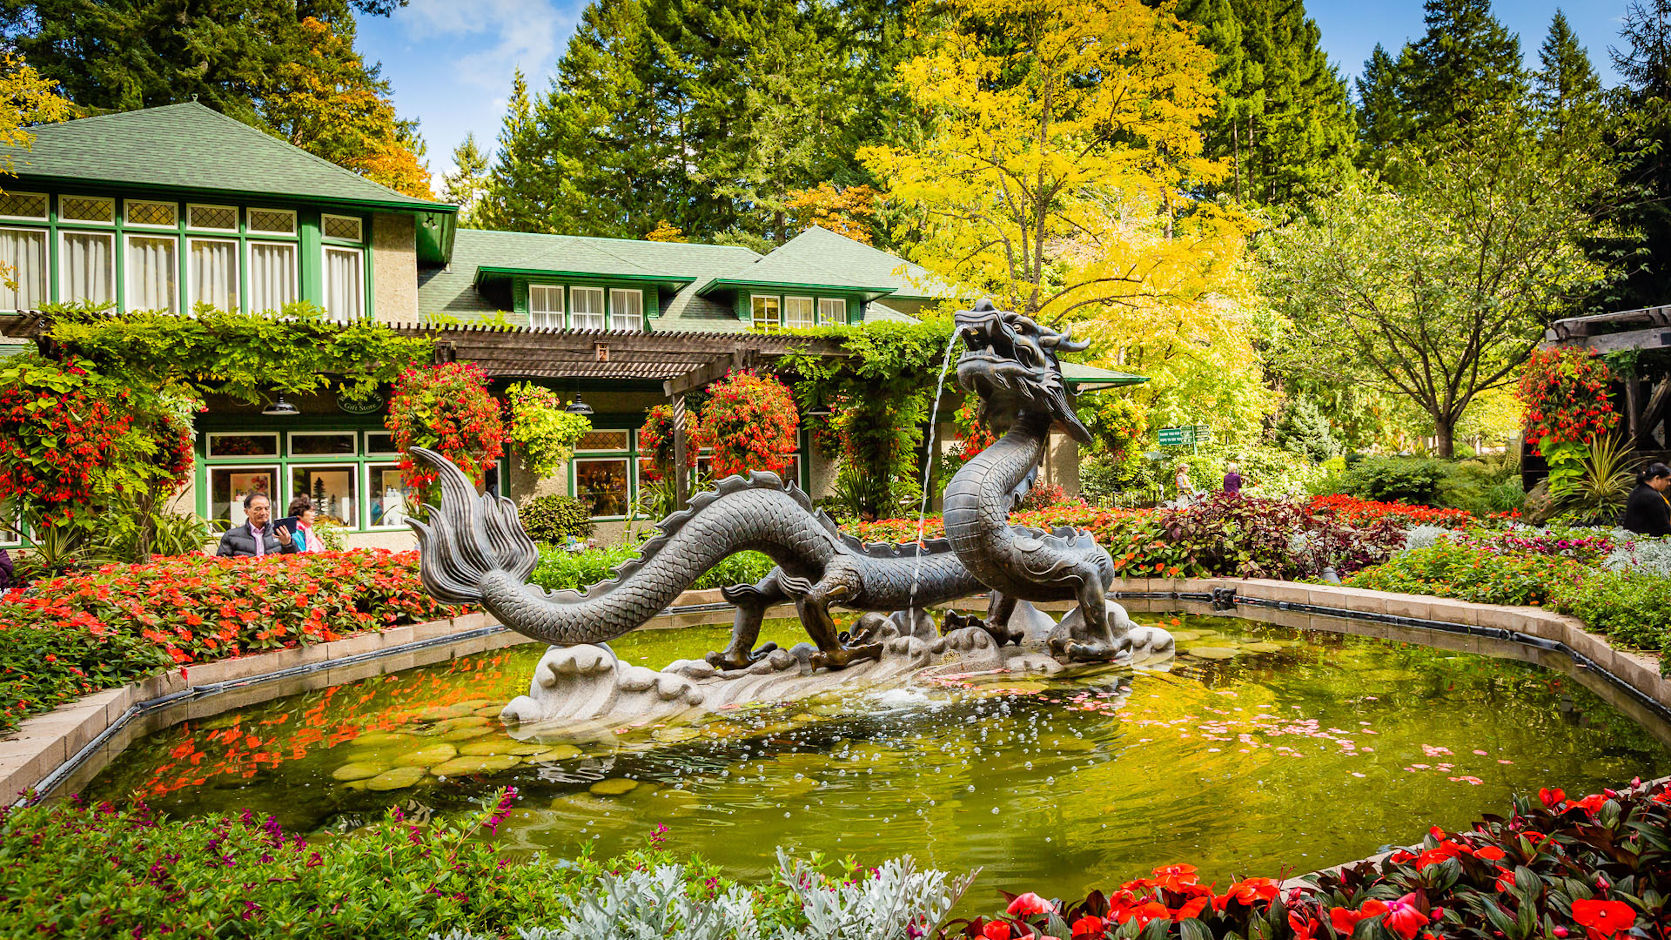 Dragon at Butchart Gardens